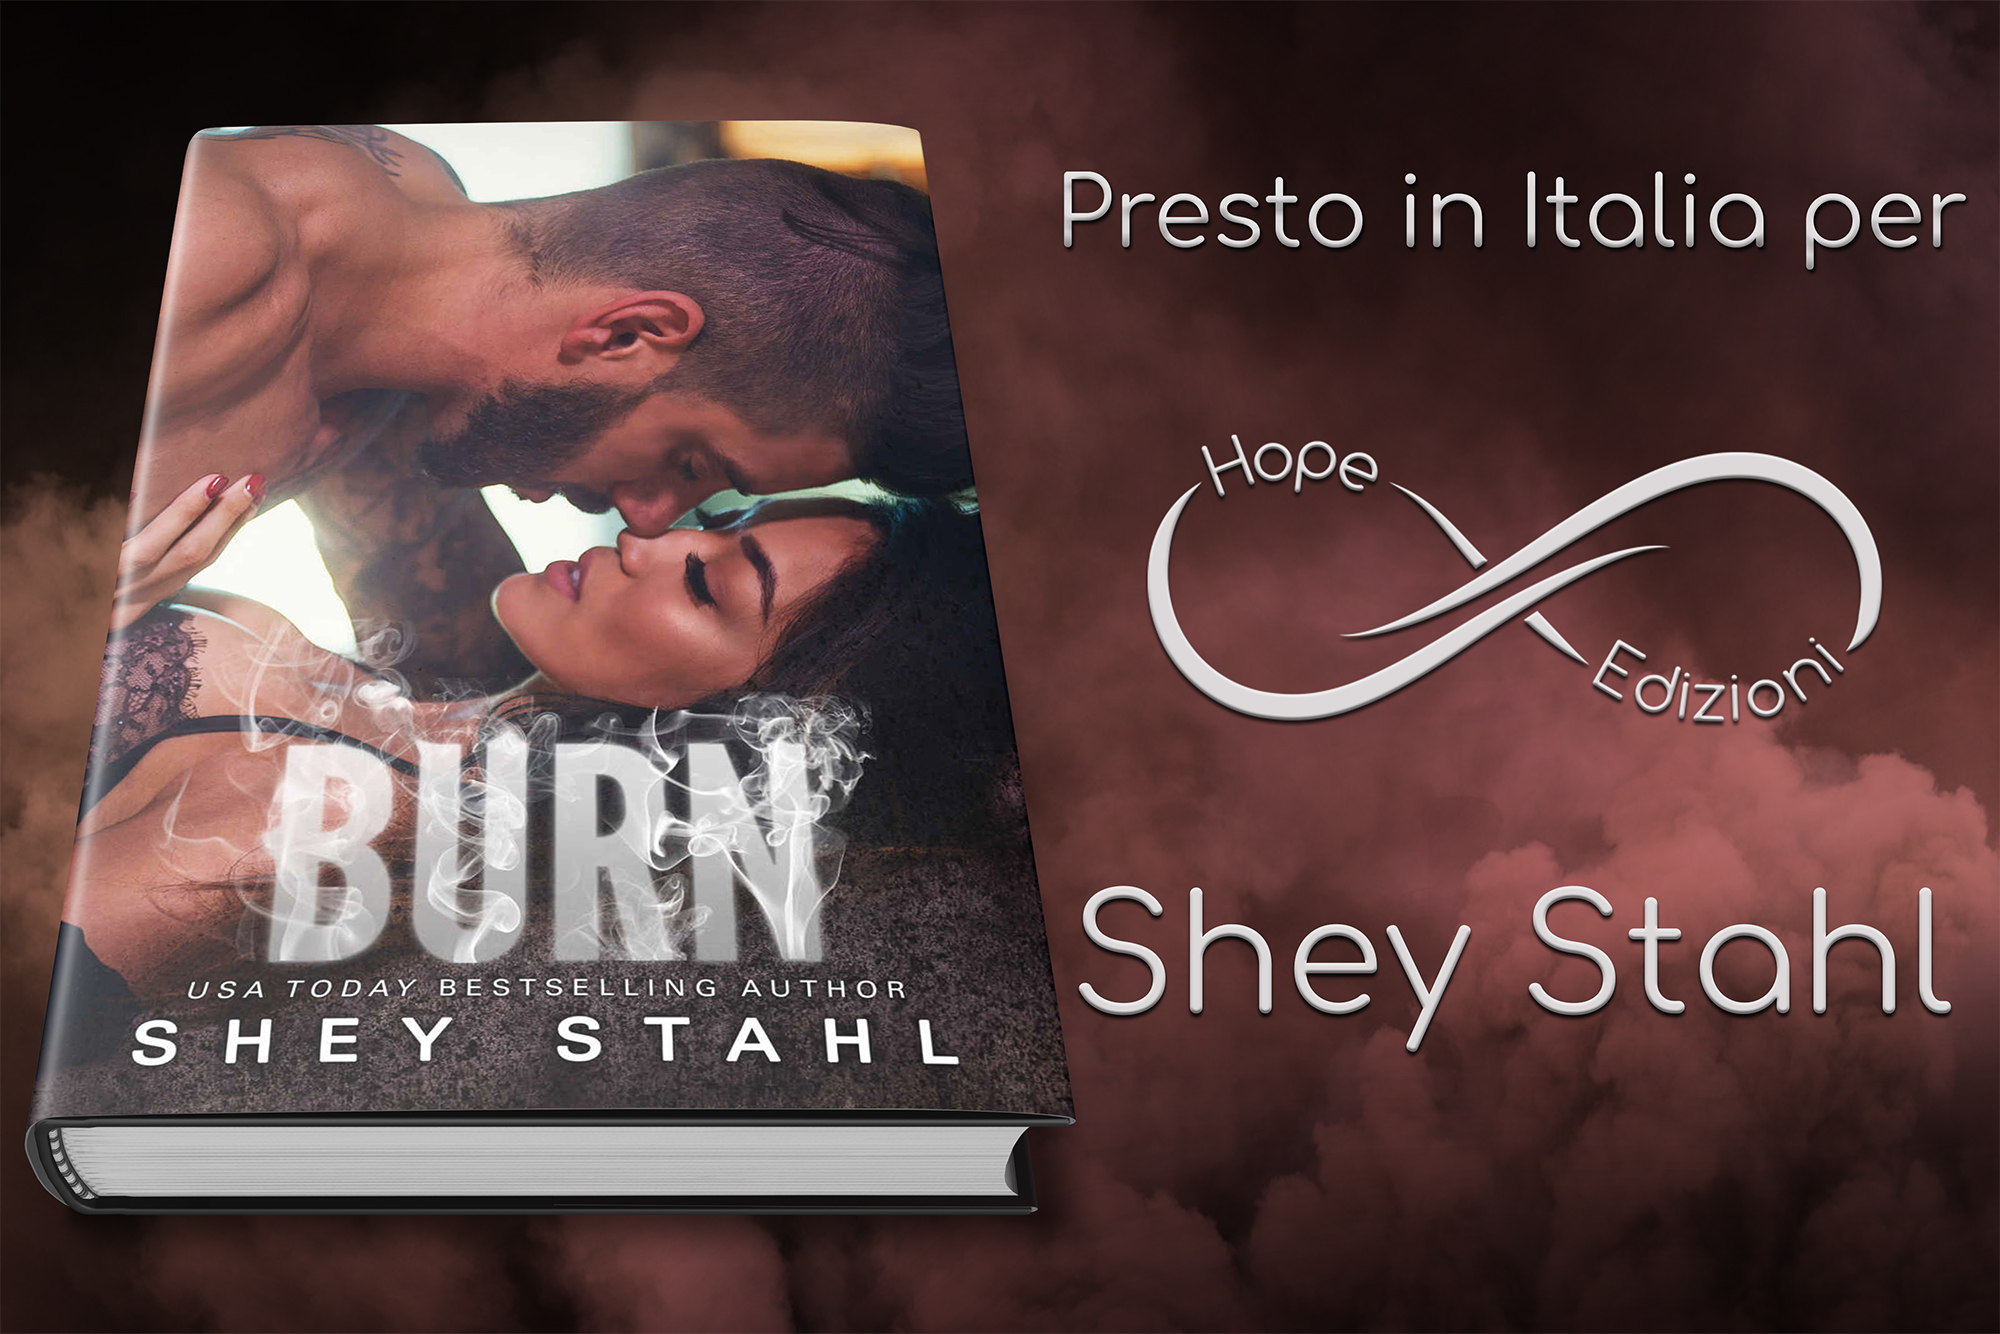 Presto in Italia… Shey Stahl!